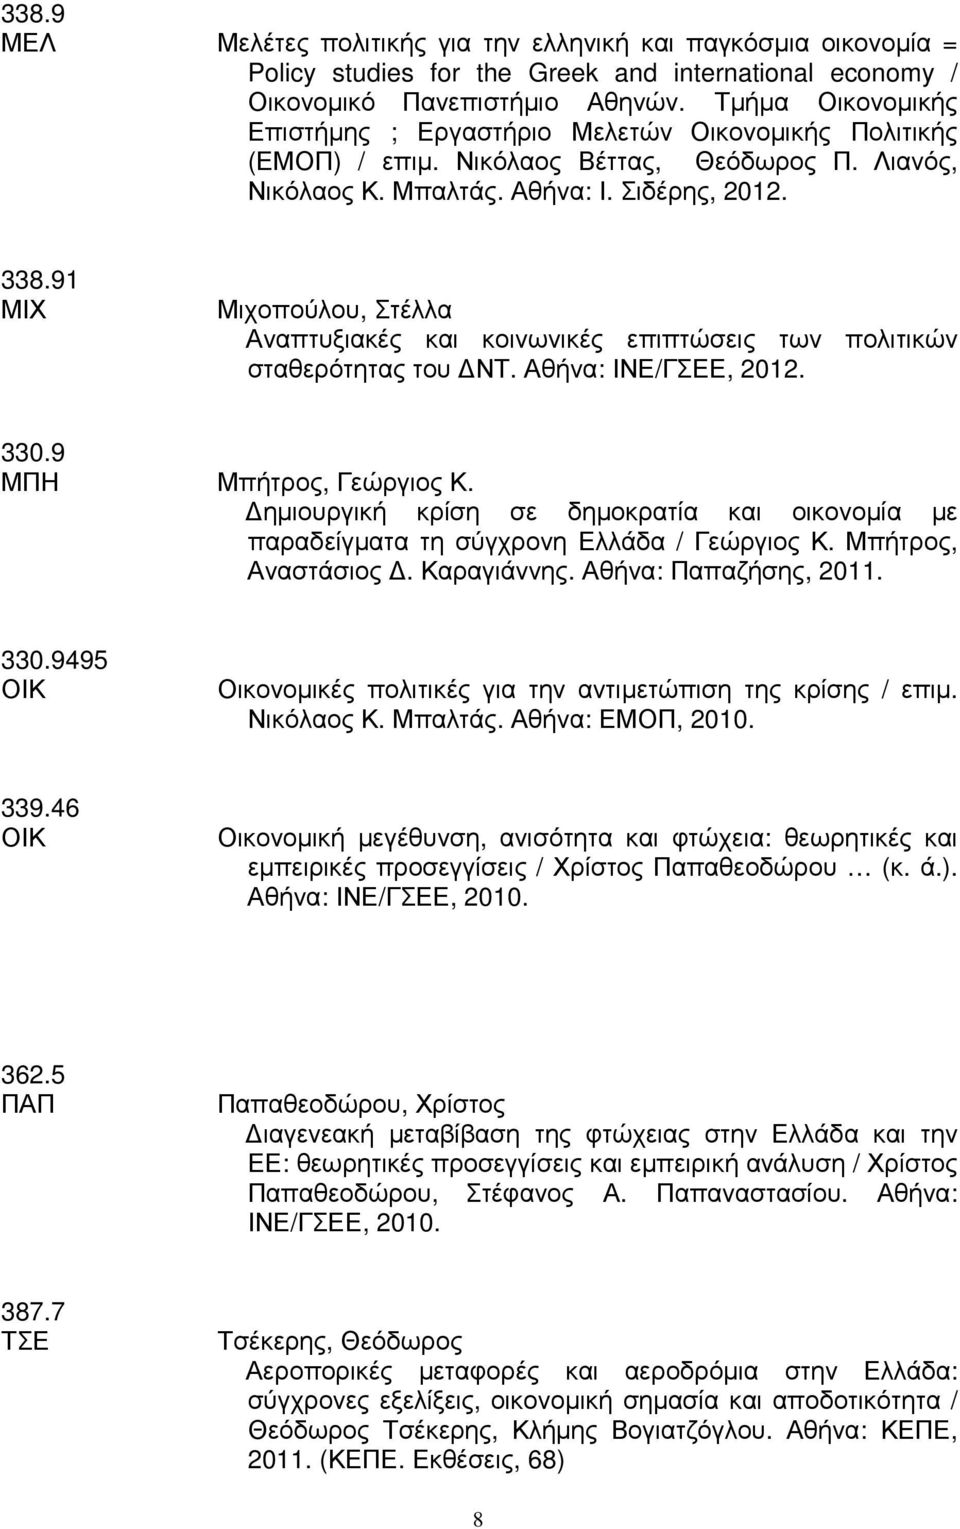 91 ΜΙΧ Μιχοπούλου, Στέλλα Αναπτυξιακές και κοινωνικές επιπτώσεις των πολιτικών σταθερότητας του ΝΤ. Αθήνα: ΙΝΕ/ΓΣΕΕ, 2012. 330.9 ΜΠΗ Μπήτρος, Γεώργιος Κ.